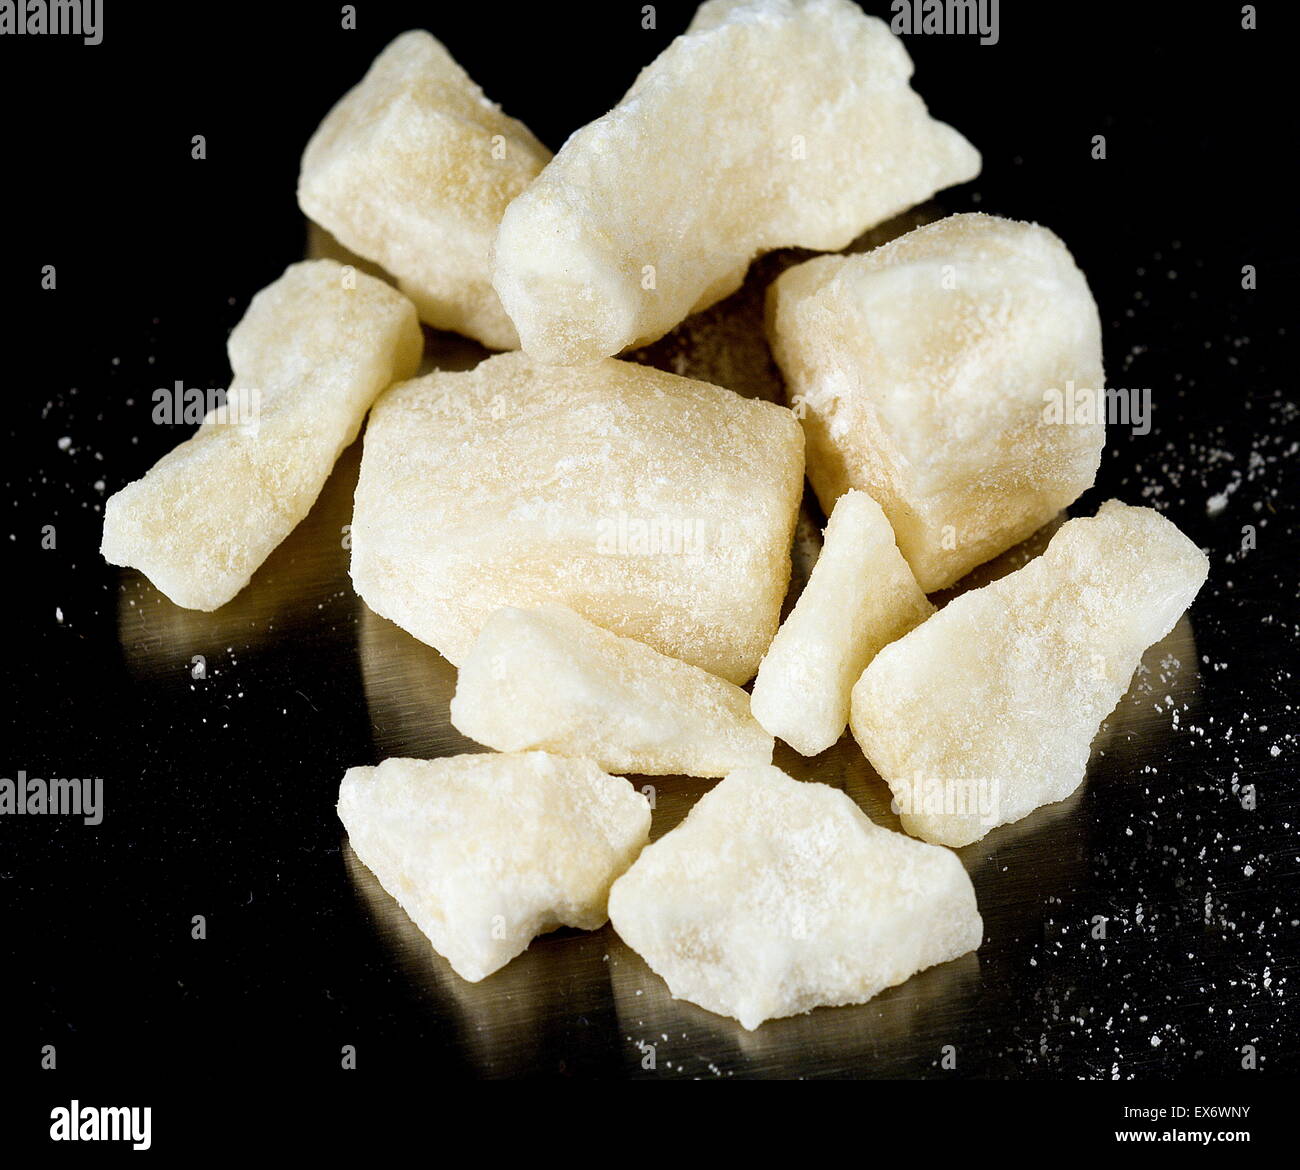 Crack-Kokain ist das Freebase Kokain, die geraucht werden kann. Es kann auch Rock, Arbeit, harte, Eisen, Cavvy, Basis, oder nur Crack bezeichnet werden; Es wird gesagt, die meisten süchtig Form von Kokain sein. Riss-Felsen bieten einen kurzen, aber intensiven hohen für Raucher. Stockfoto